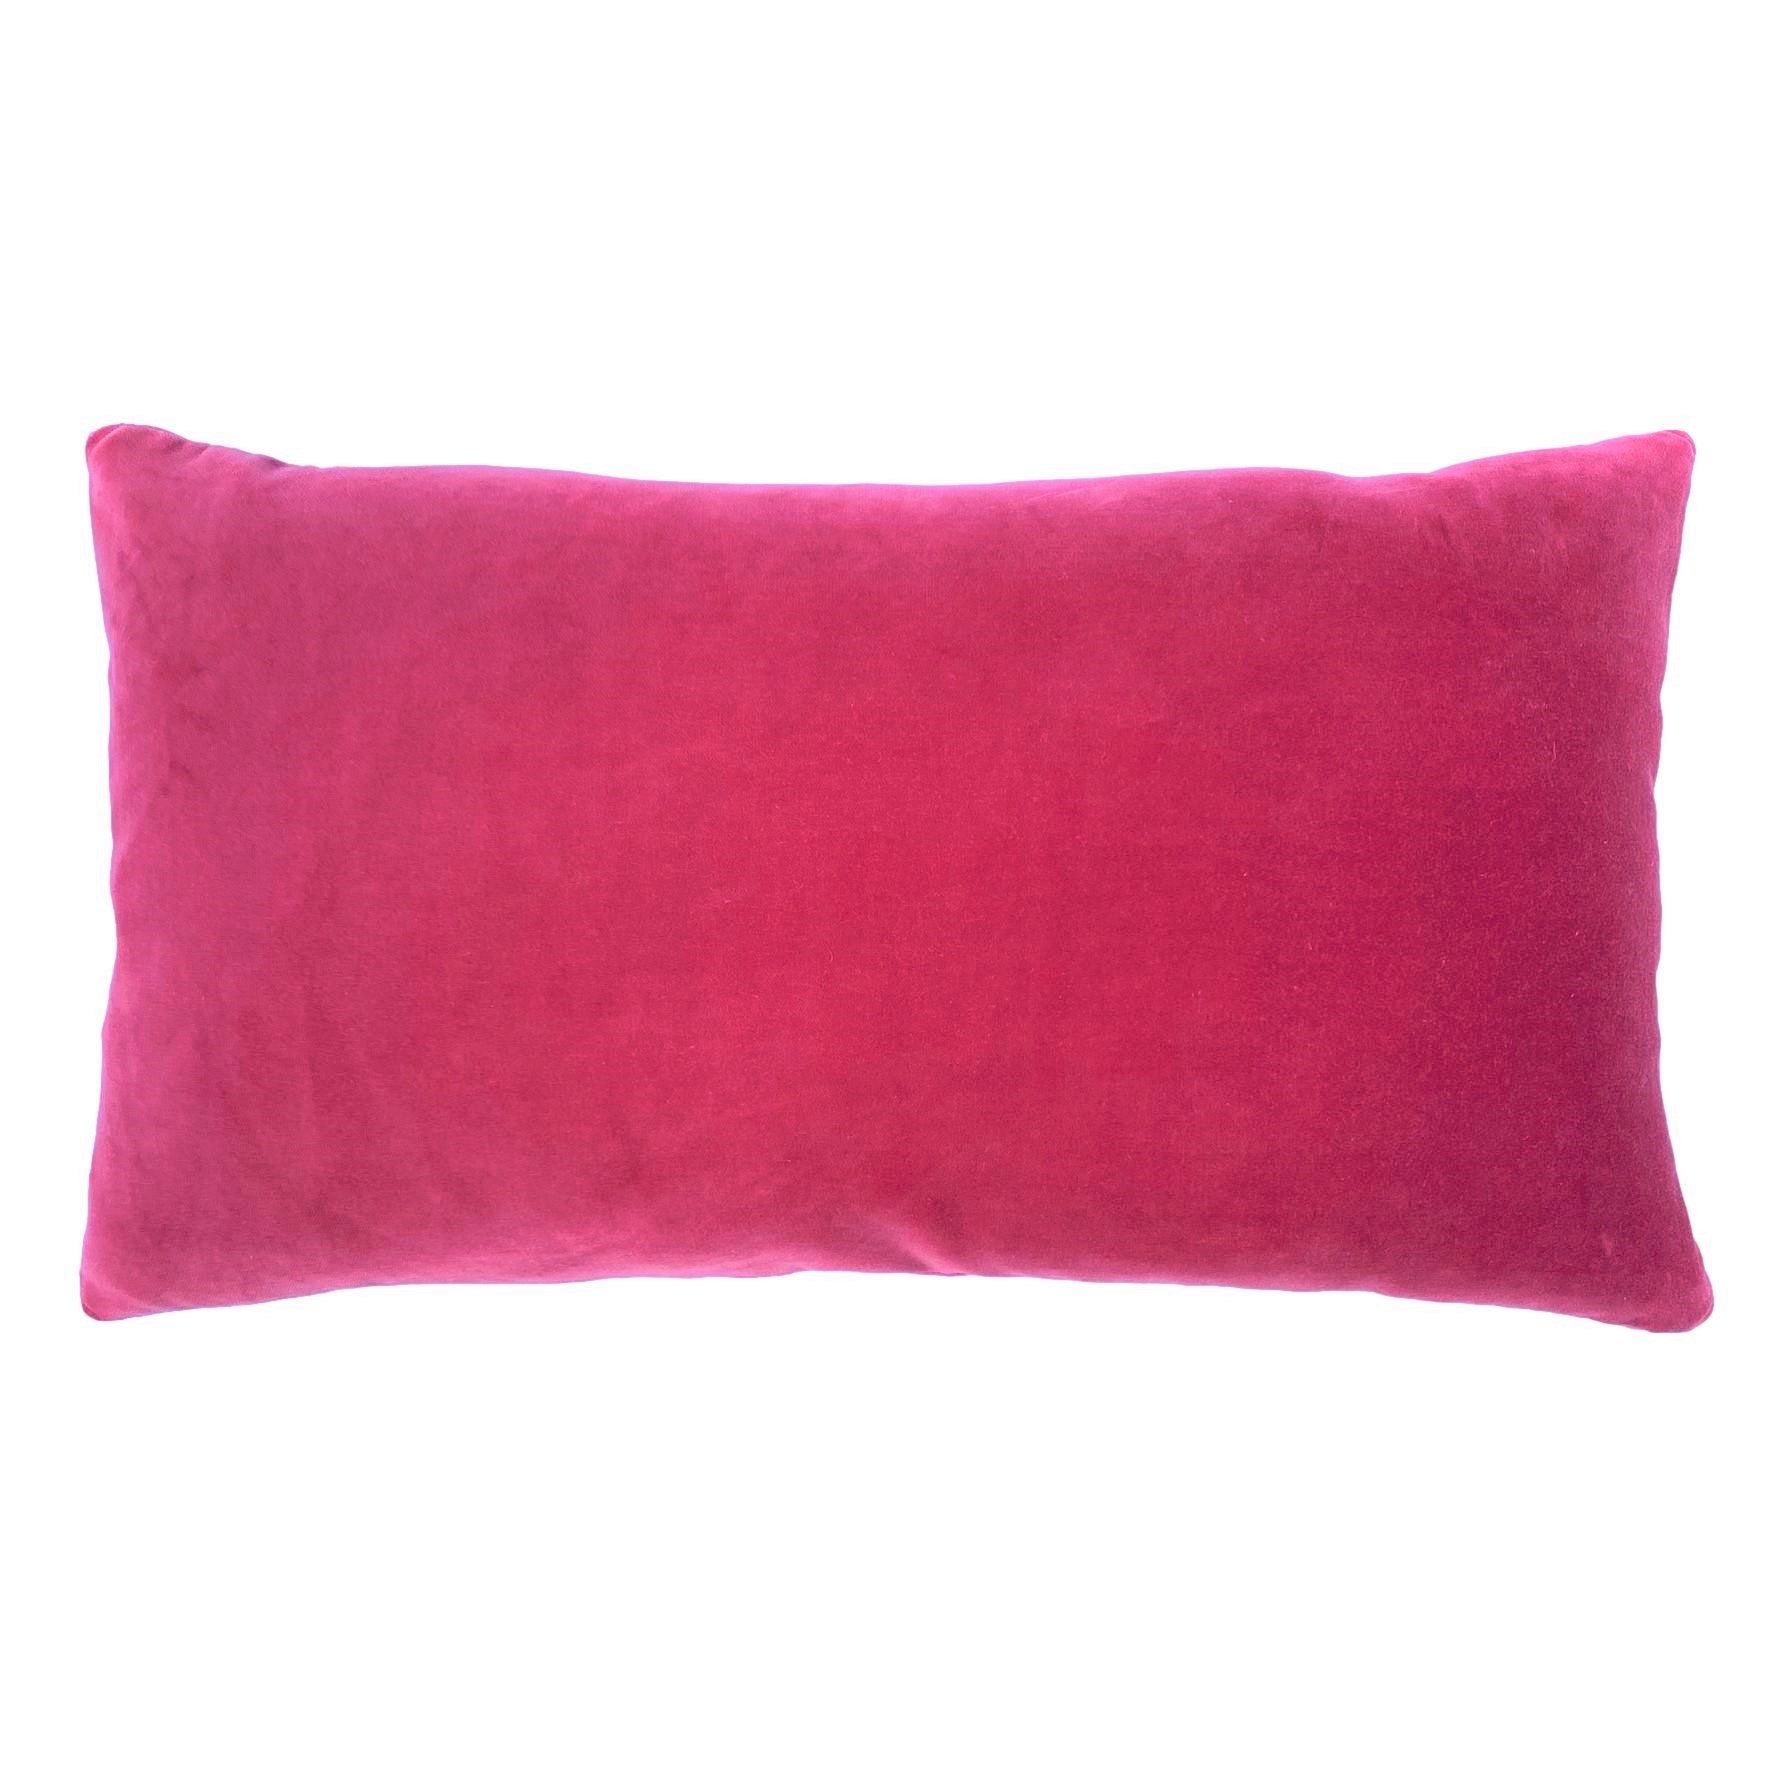 pink velvet cushion covers